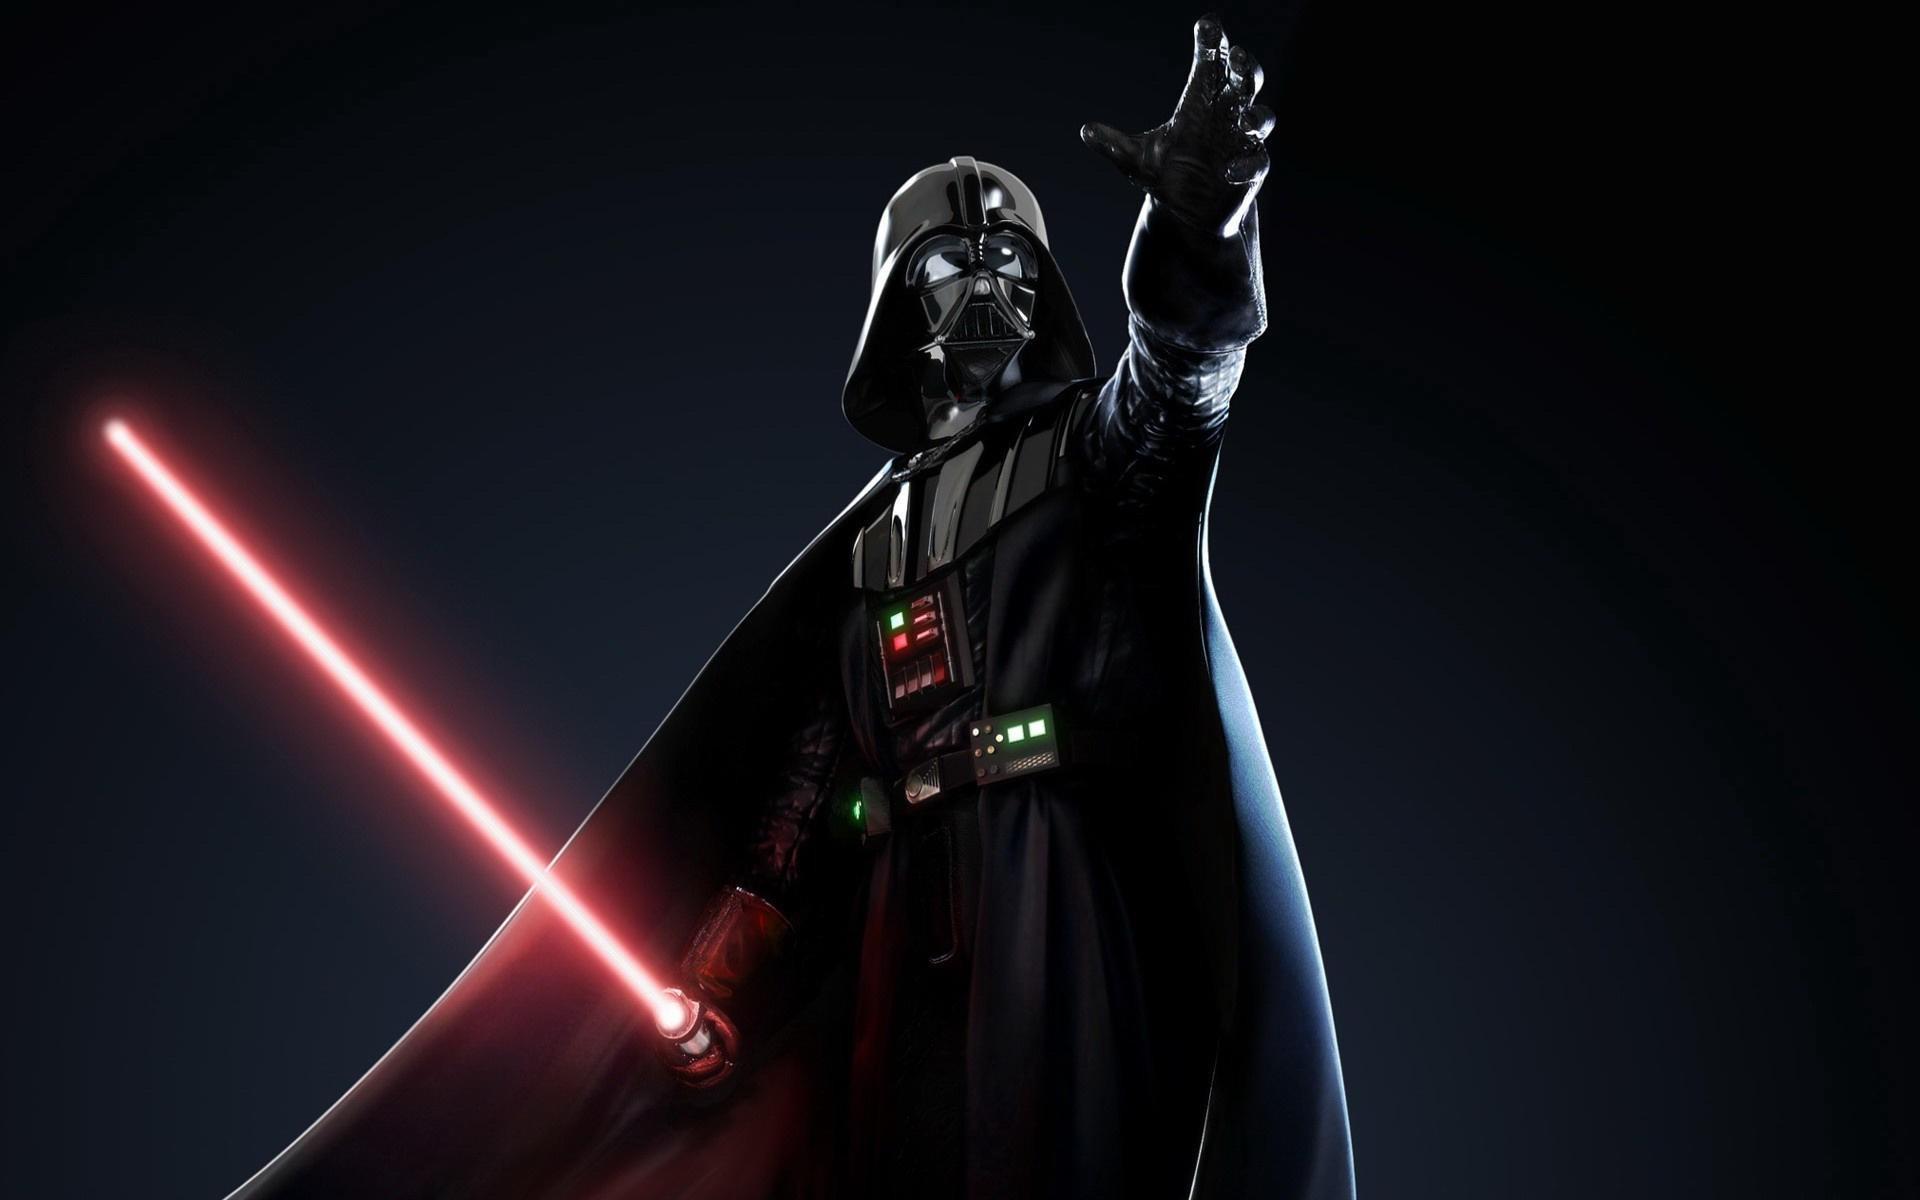 Obi Wan Kenobi (ROTS) vs. Darth Vader (ROTJ) - (Canon Feats